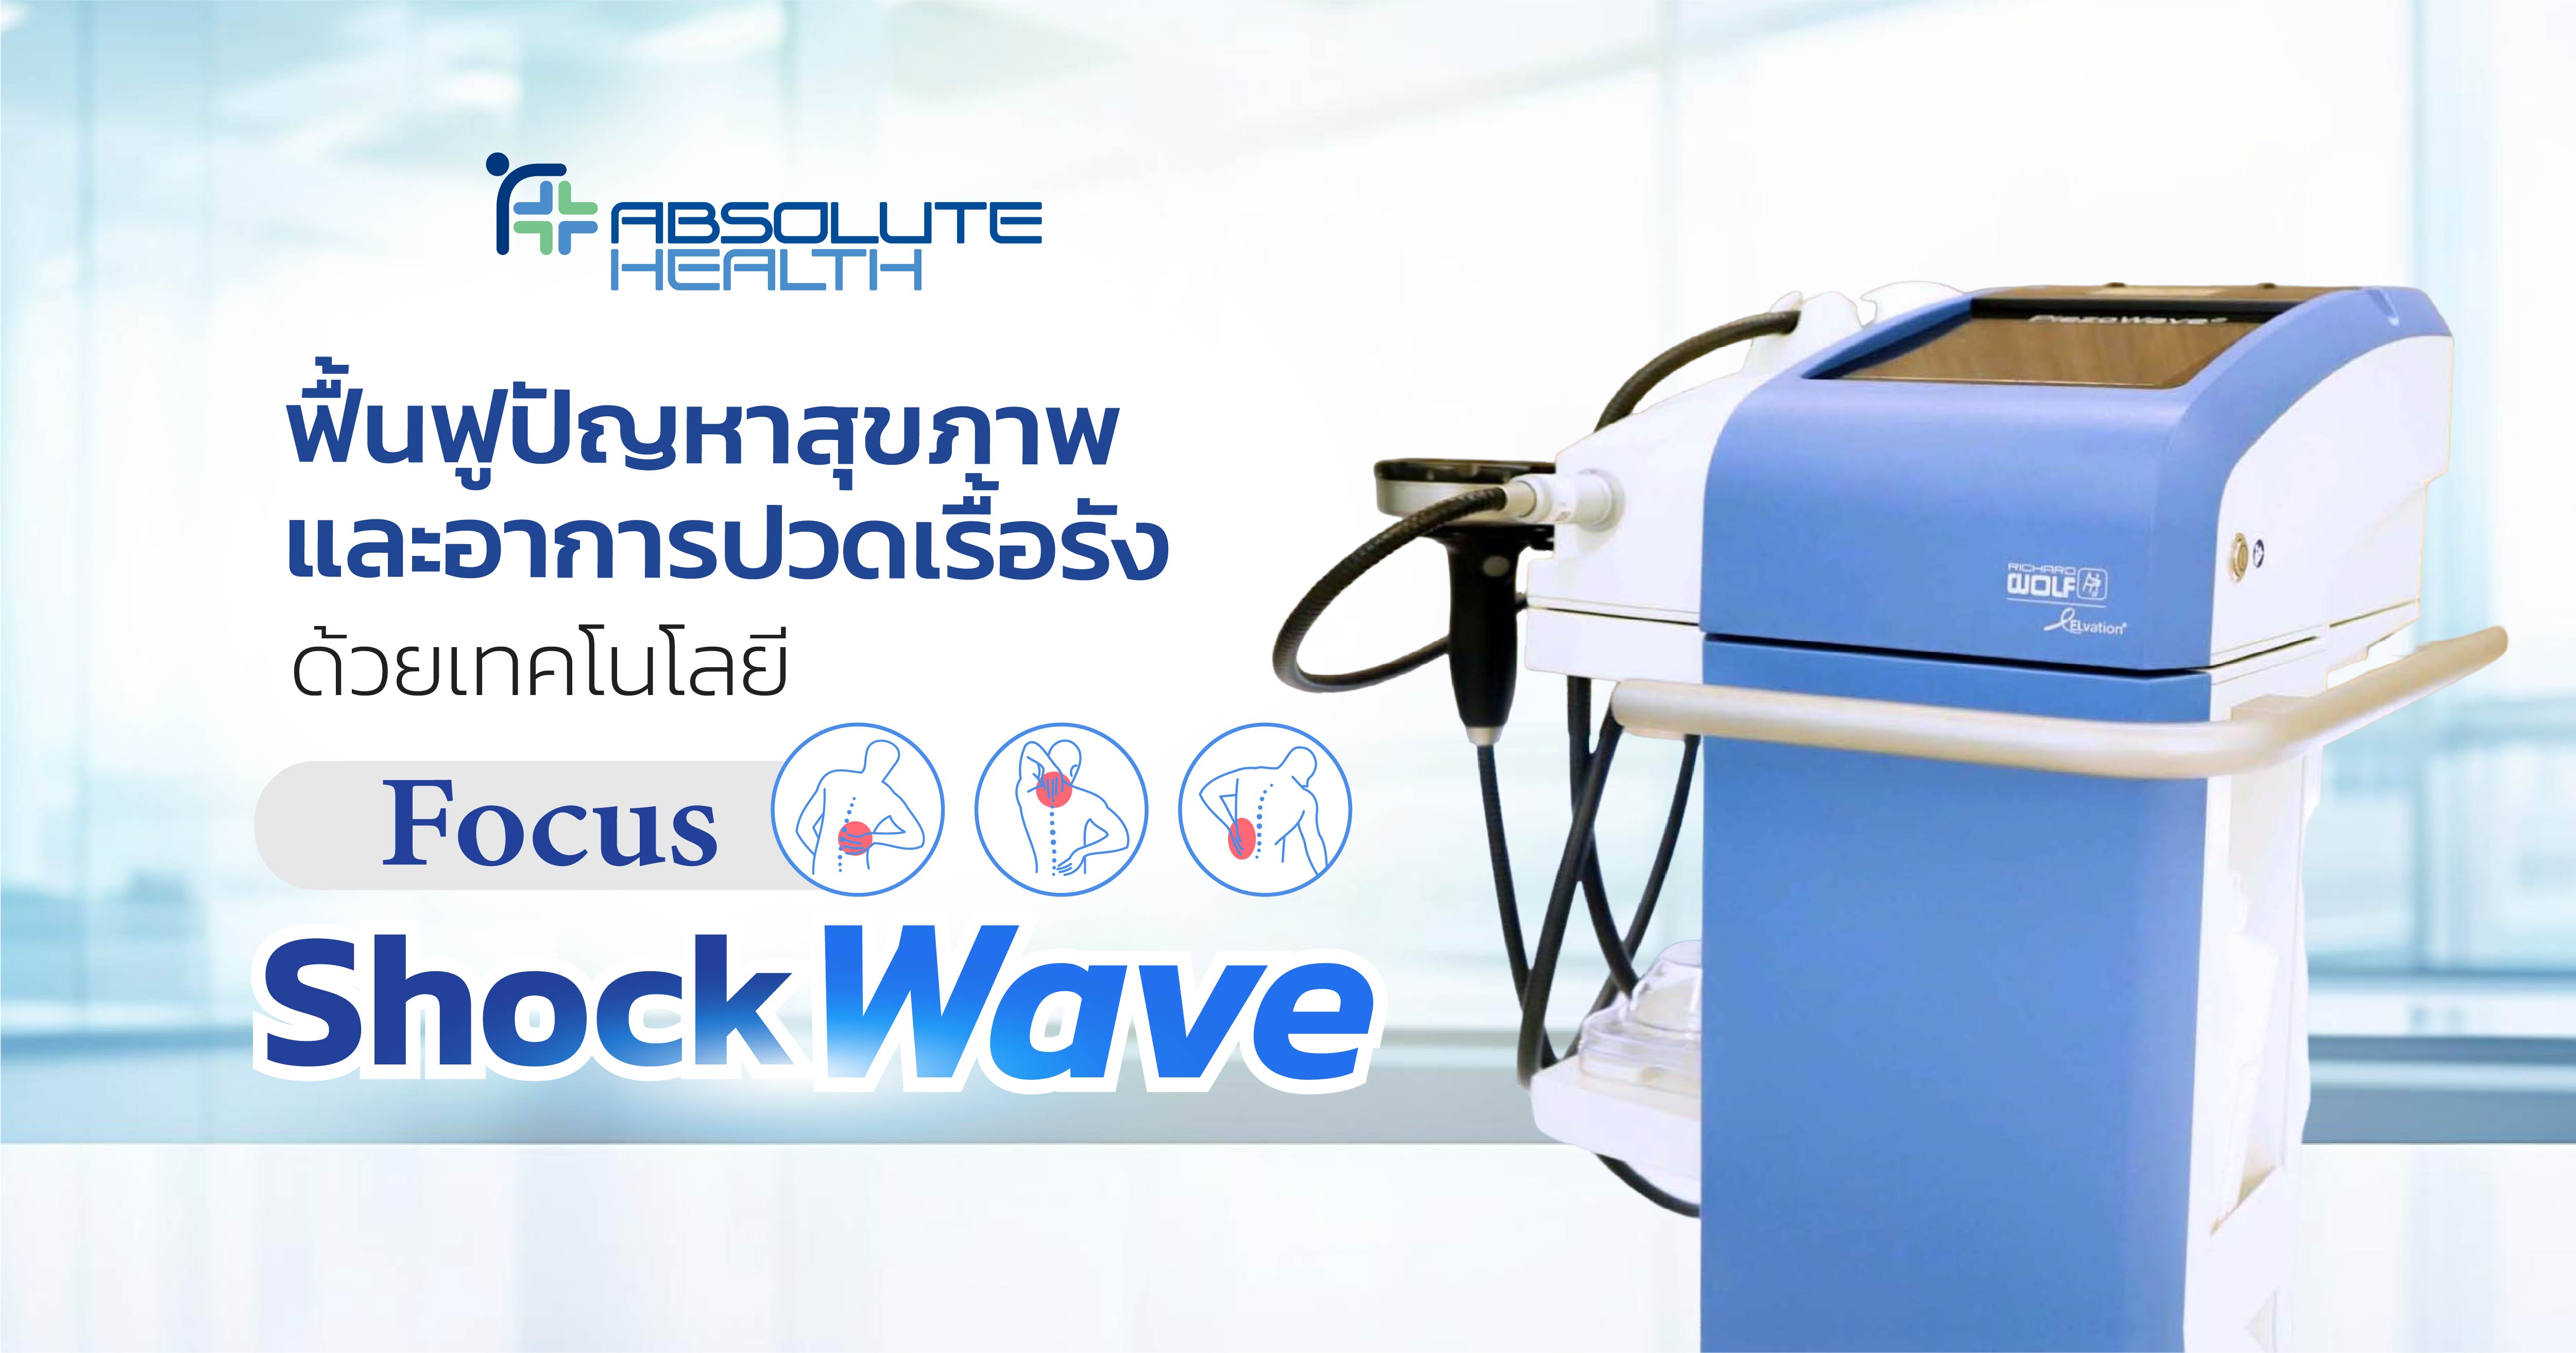  إعادة تأهيل المشاكل الصحية والألام المزمنة باستخدام تقنية الموجات التصادمية التركيزية Focus Shock Wave.